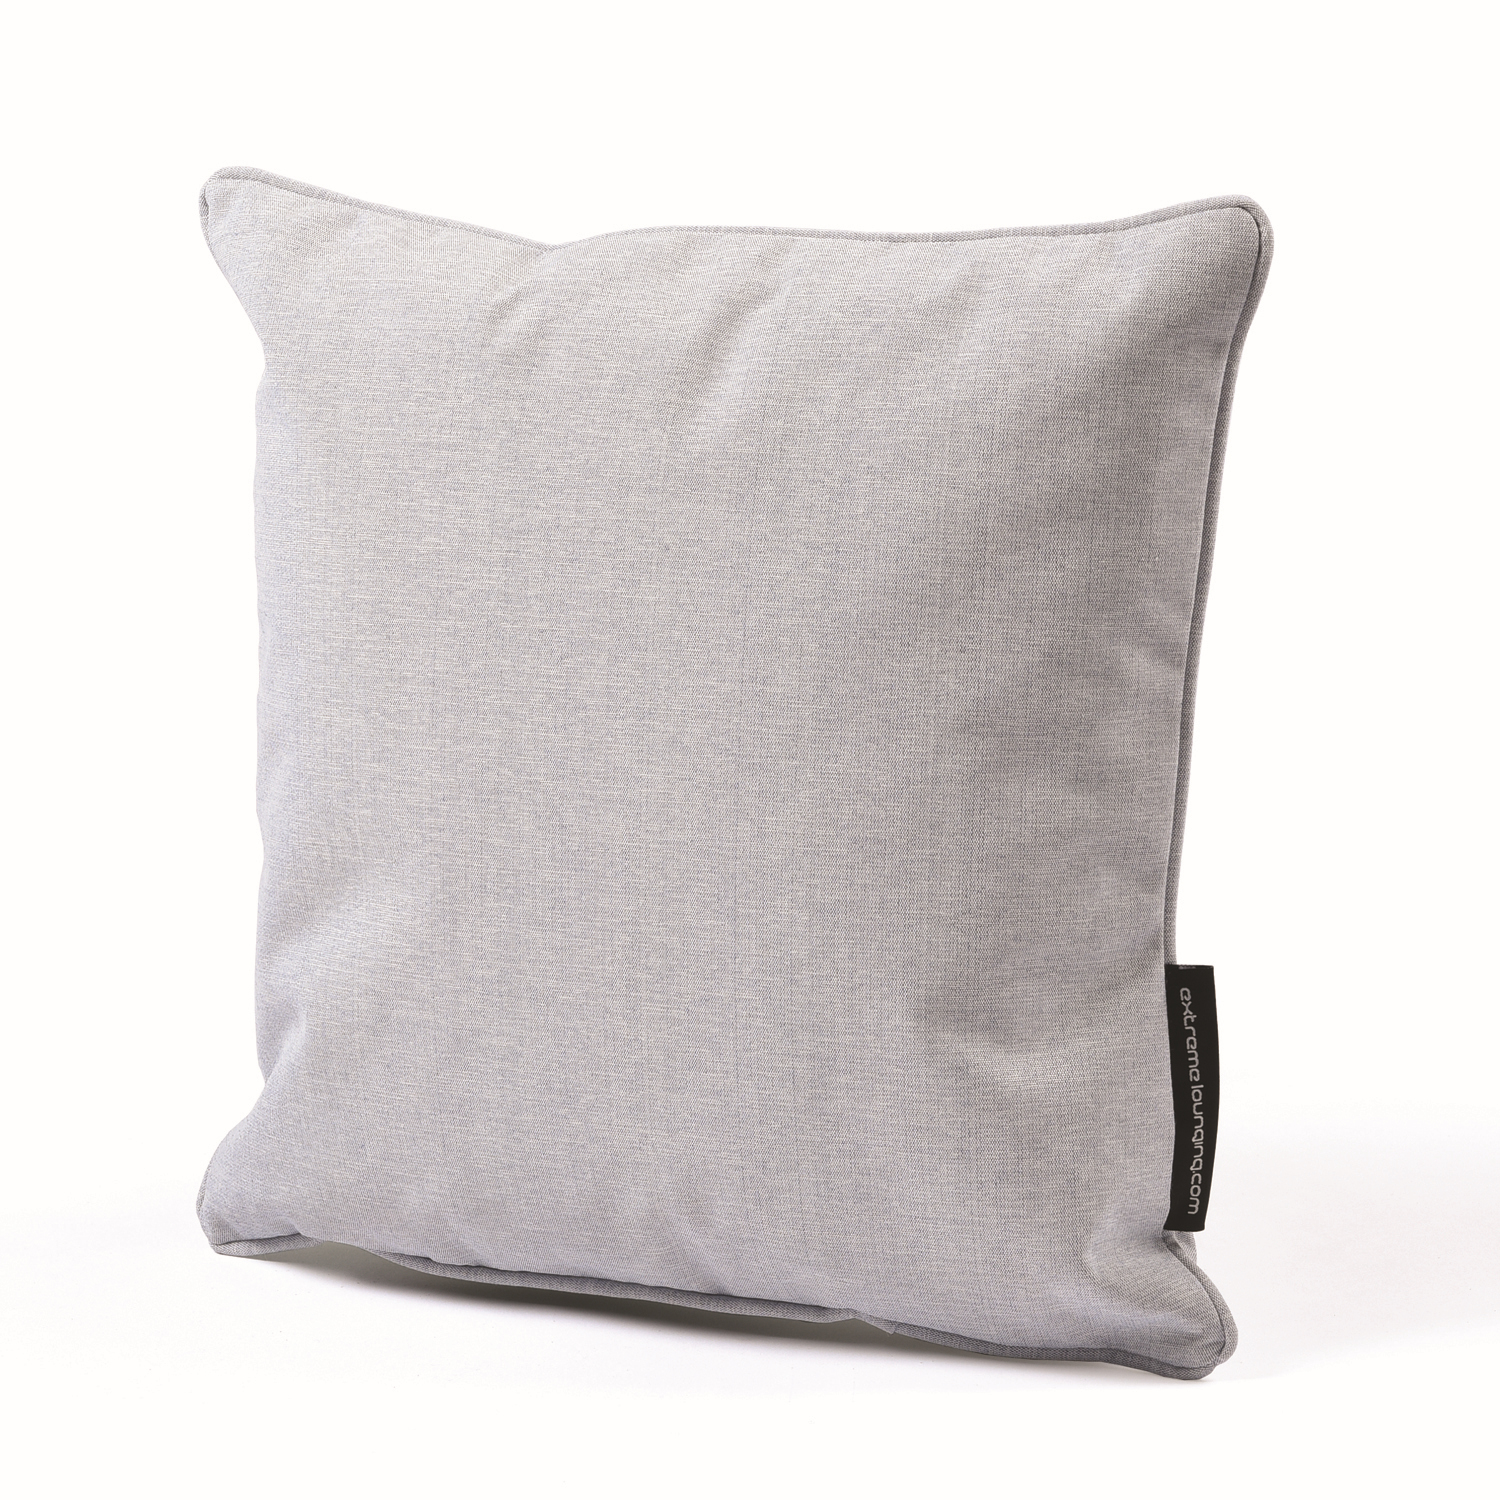 b-cushion extreme lounging Kissen Pastellblau 40x40cm leicht wasserabweisend pflegeleicht UV-beständig